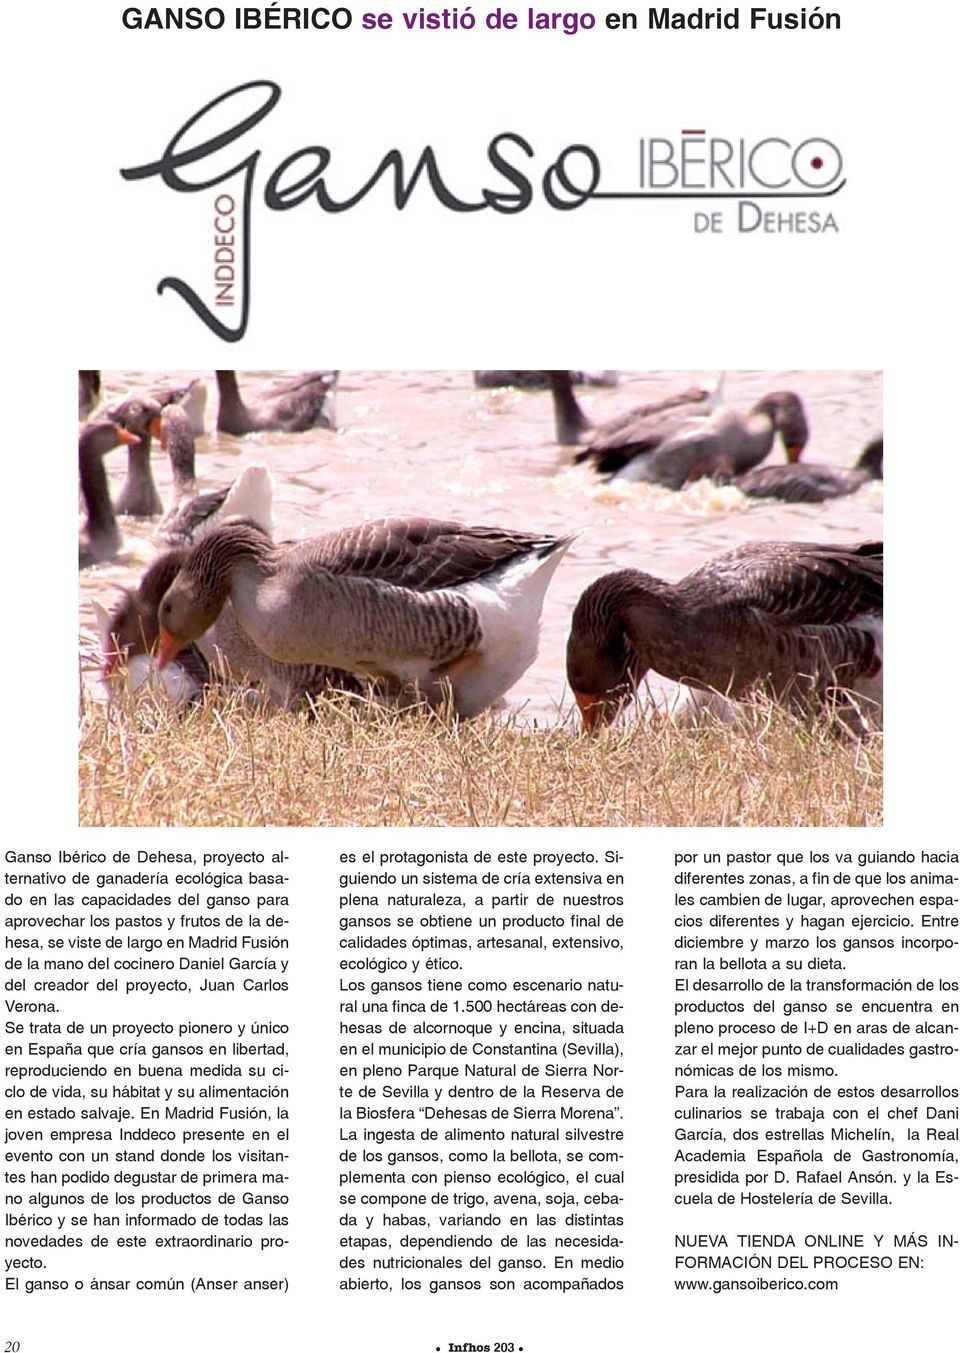 Se trata de un proyecto pionero y único en España que cría gansos en libertad, reproduciendo en buena medida su ciclo de vida, su hábitat y su alimentación en estado salvaje.